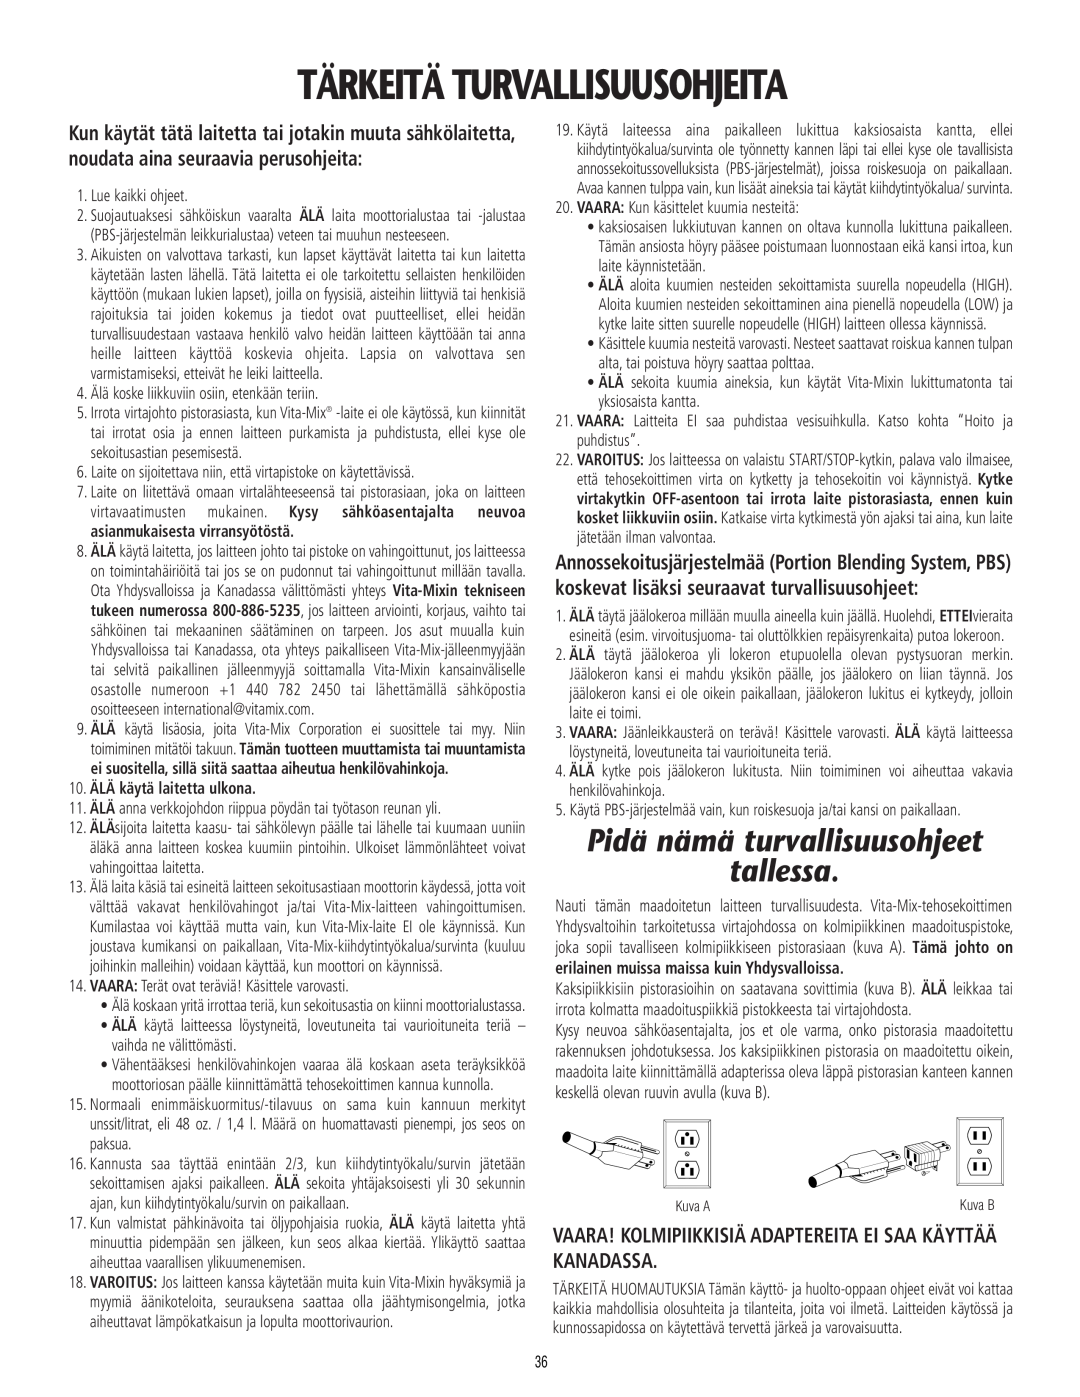 Vita-Mix 101807 manual Tärkeitä Turvallisuusohjeita, Pidä nämä turvallisuusohjeet tallessa 